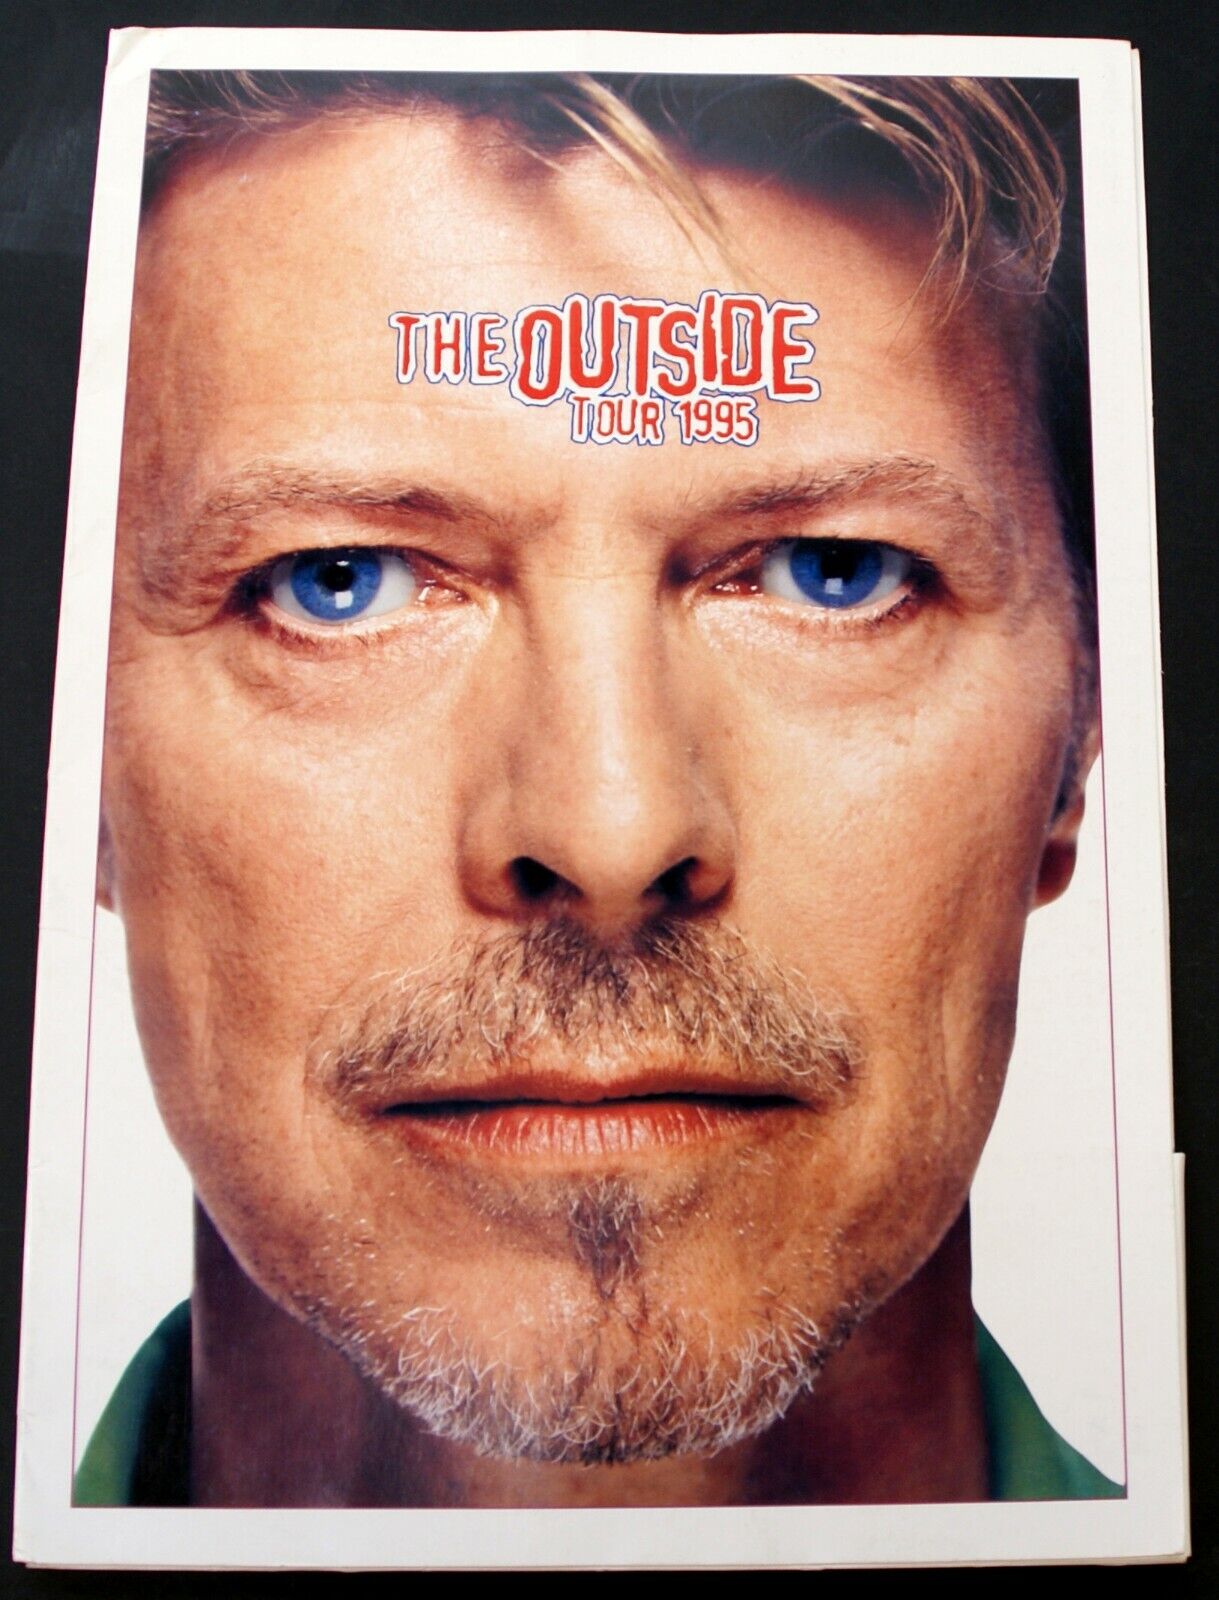 David Bowie Morrissey Press Pack Poole Edwards PR Ltd The Outside Tour 1995